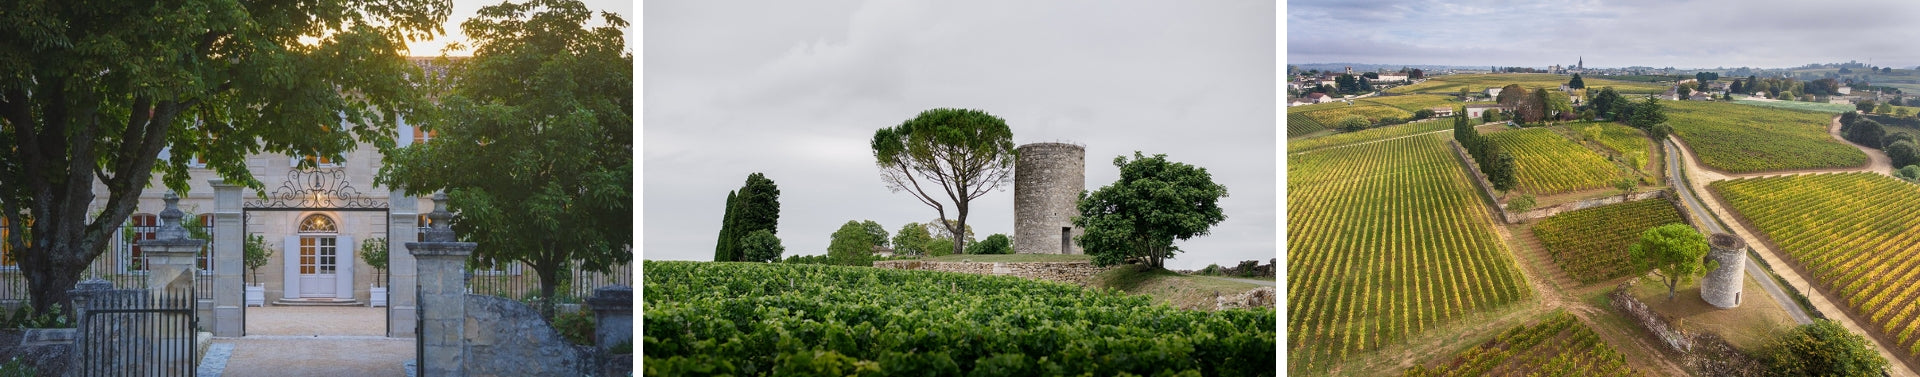 Chateau Berliquet